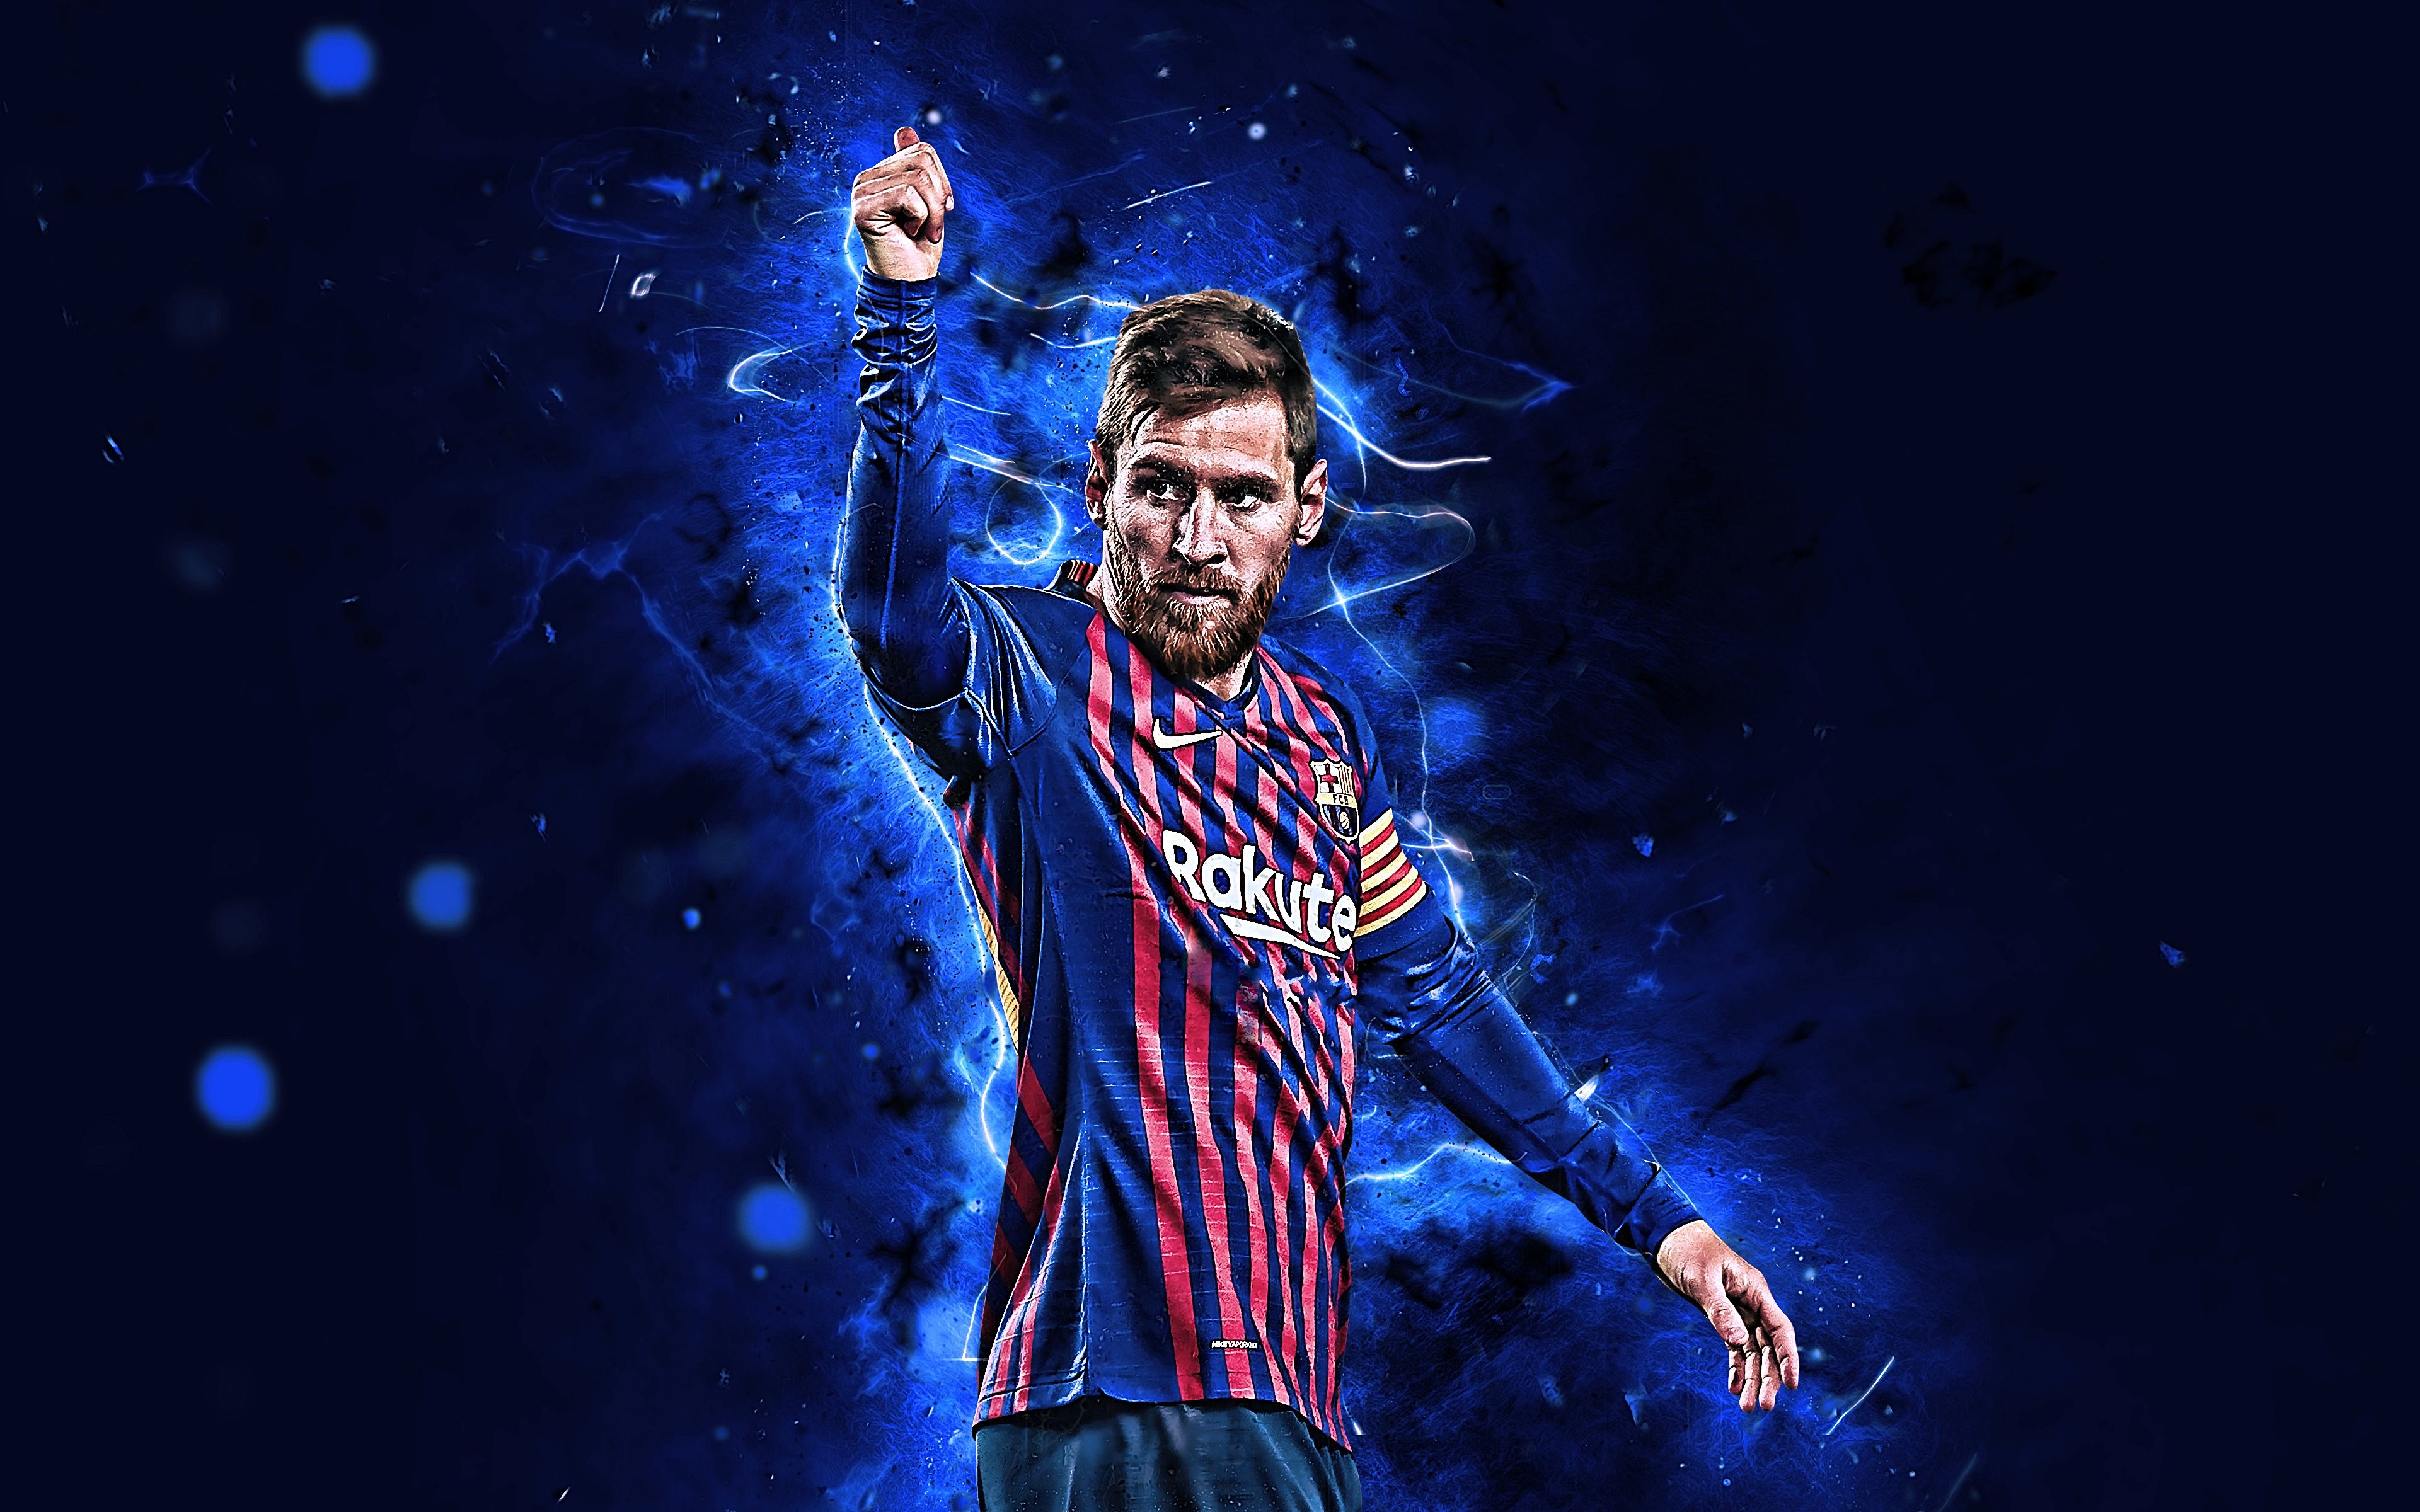 Cần một bức ảnh nền 4K về Lionel Messi để làm cho màn hình máy tính của bạn thêm sống động và nổi bật? Hãy khám phá bộ sưu tập Messi 4K Wallpaper Collection với những hình ảnh đầy sức sống và đẹp mắt nhất của ngôi sao bóng đá này!